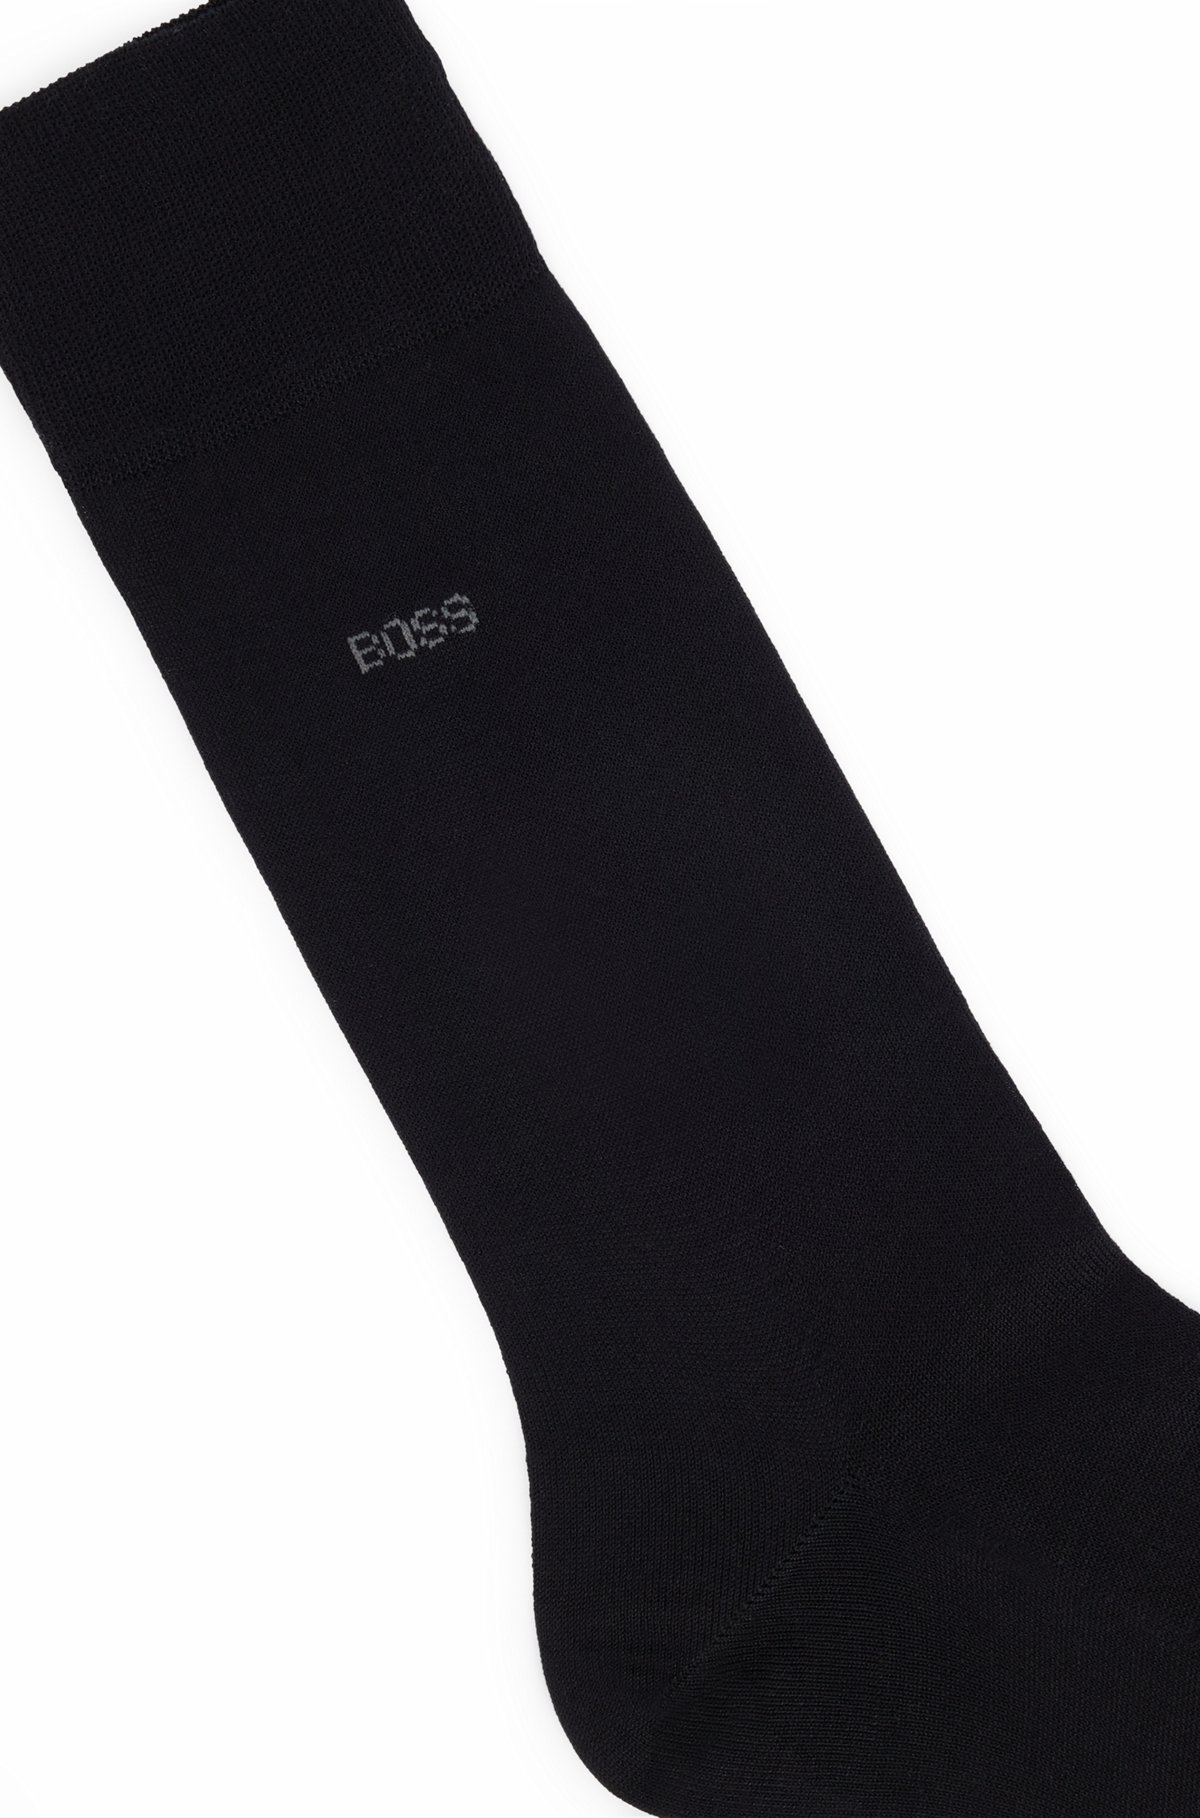 Calcetines de largo normal en algodón egipcio mercerizado con logo, Negro